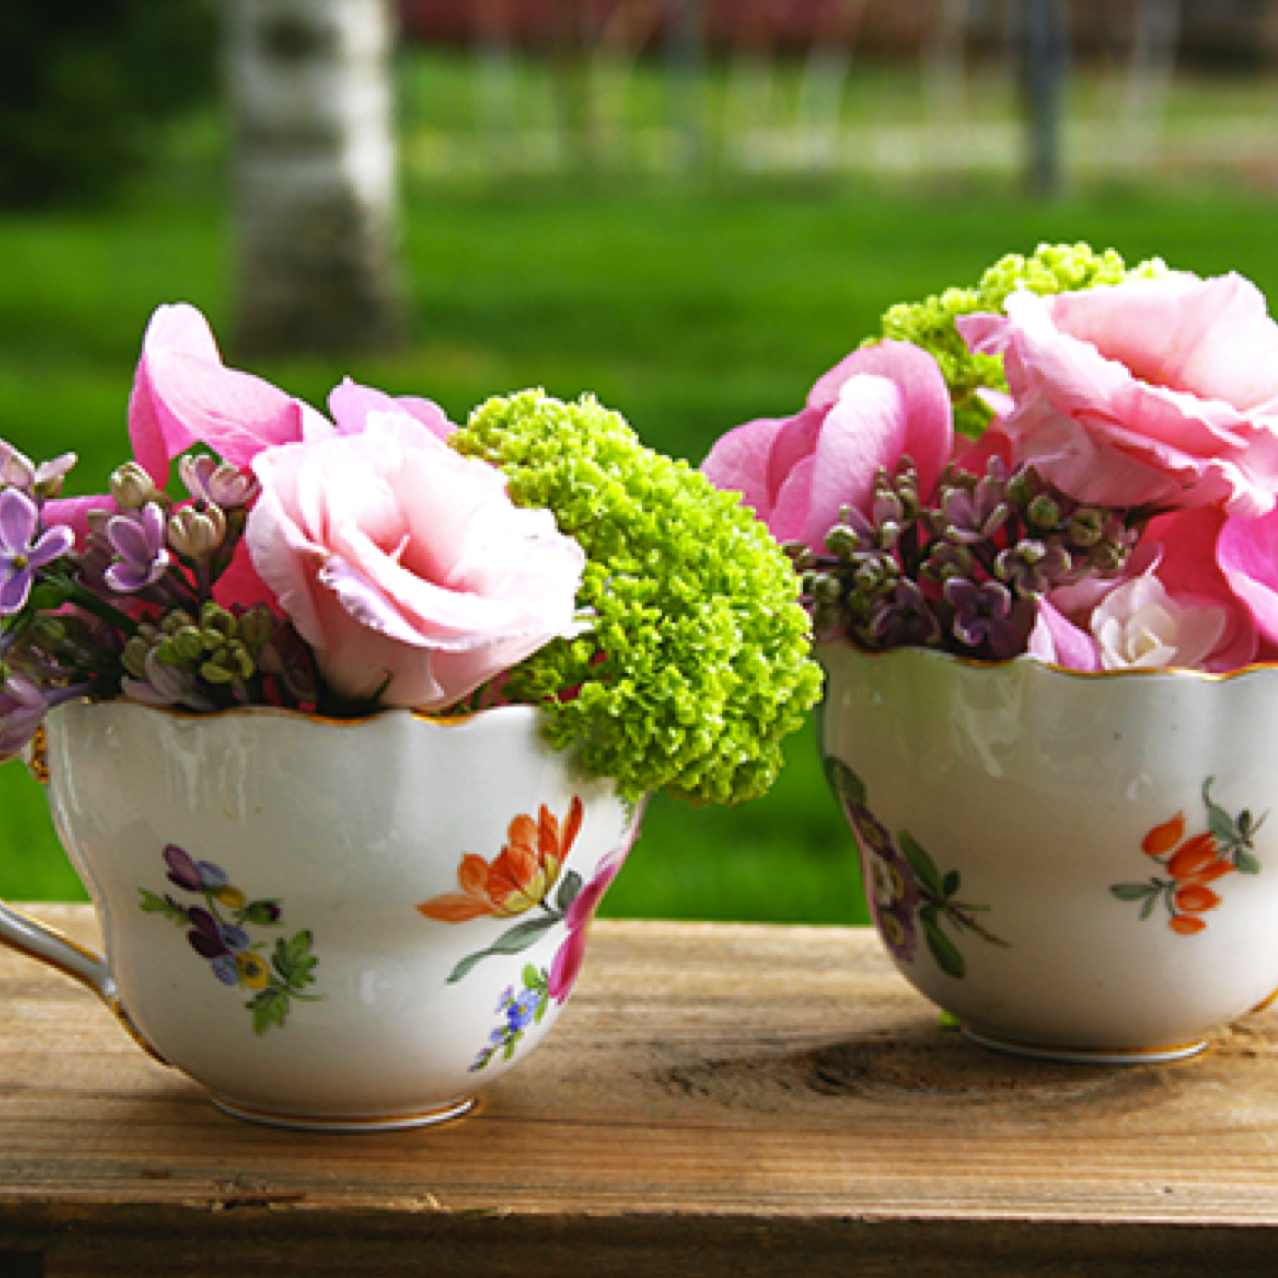 Petits arrangements de fleurs coupées dans des tasses 'Meissen'. Avec des Lysianthus, Lilas, Hortensia et Viburnum Opulus.